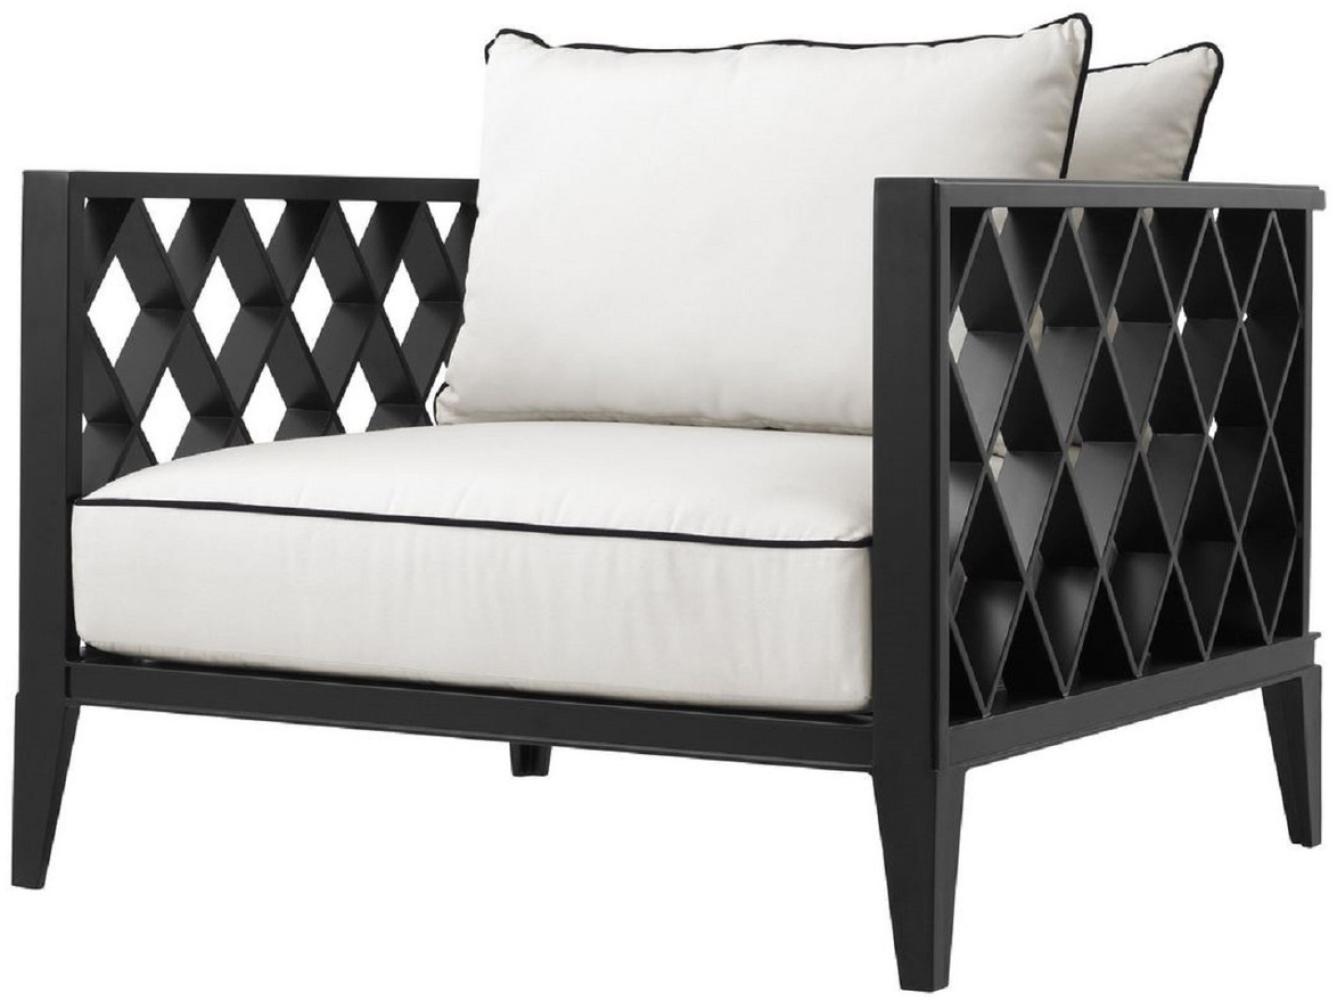 Casa Padrino Luxus Wohnzimmer Sessel mit Kissen Mattschwarz / Weiß 96,5 x 93,5 x H. 68,5 cm - Wohnzimmer Möbel Bild 1